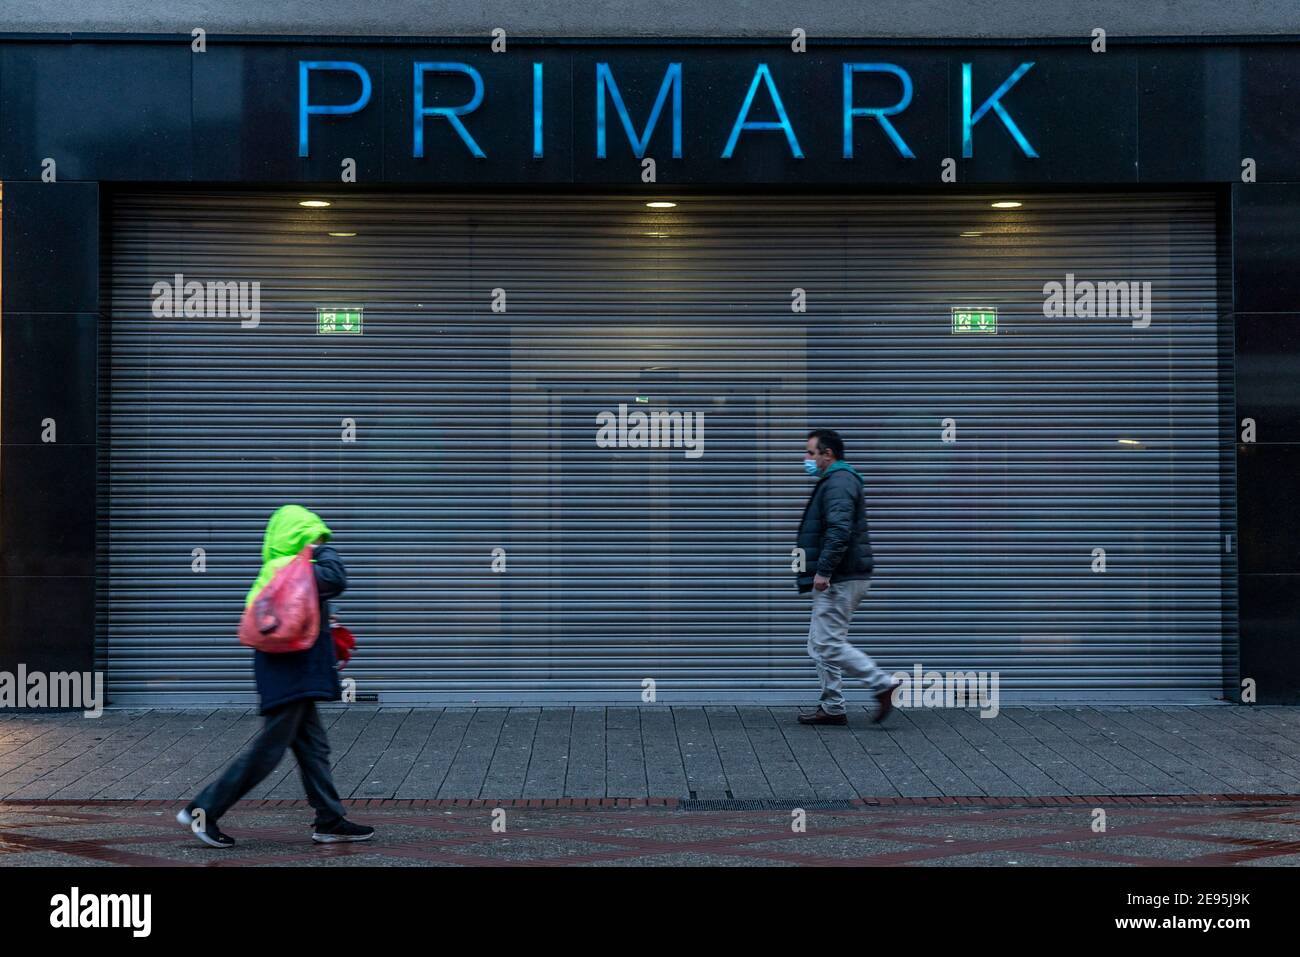 Die Innenstadt von Gelsenkirchen, Fussgängerzone, Bahnhofstrasse, während der Corona Krise, Lockdown im Januar 2021, geschlossene Geschäfte, Primark M Stock Photo